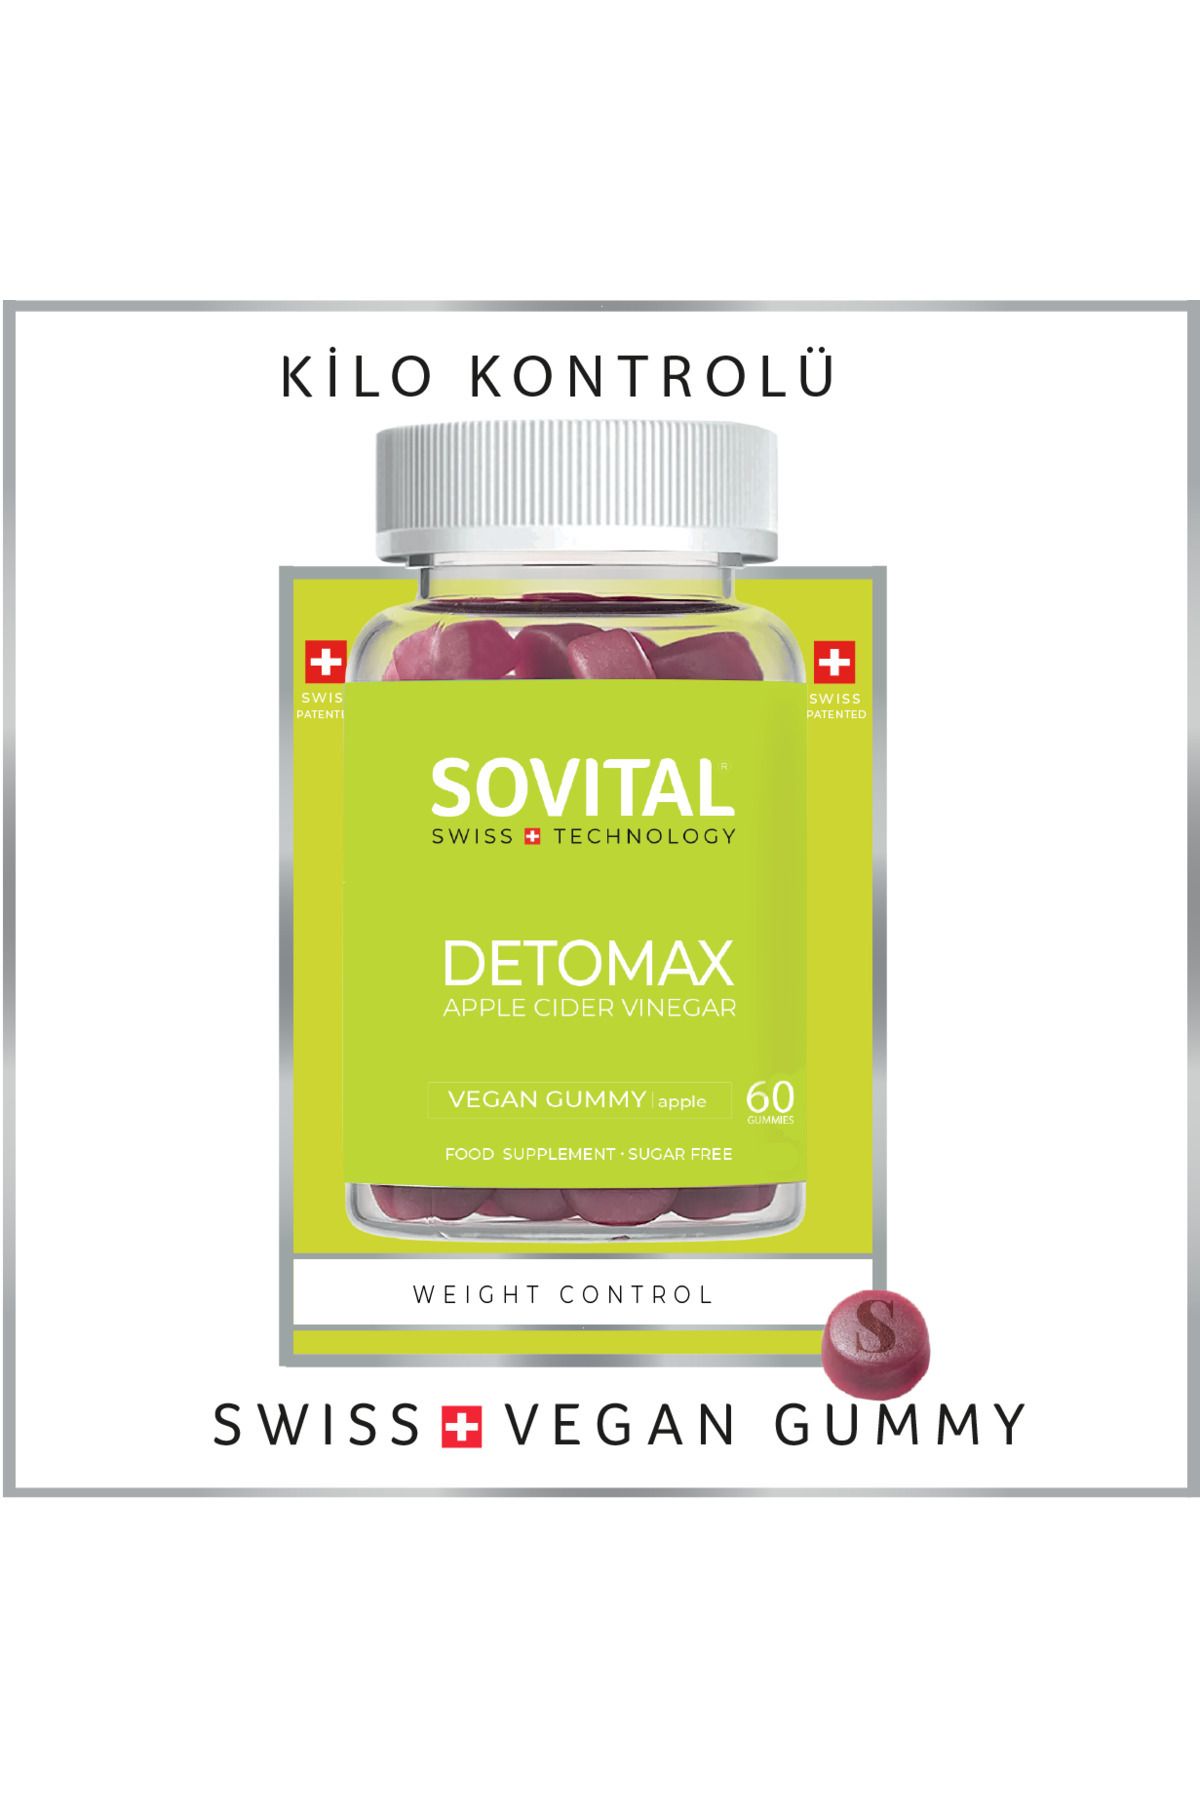 SOVITAL Detomax Detoks Kilo Kontrolü Diyet Vegan Gummy